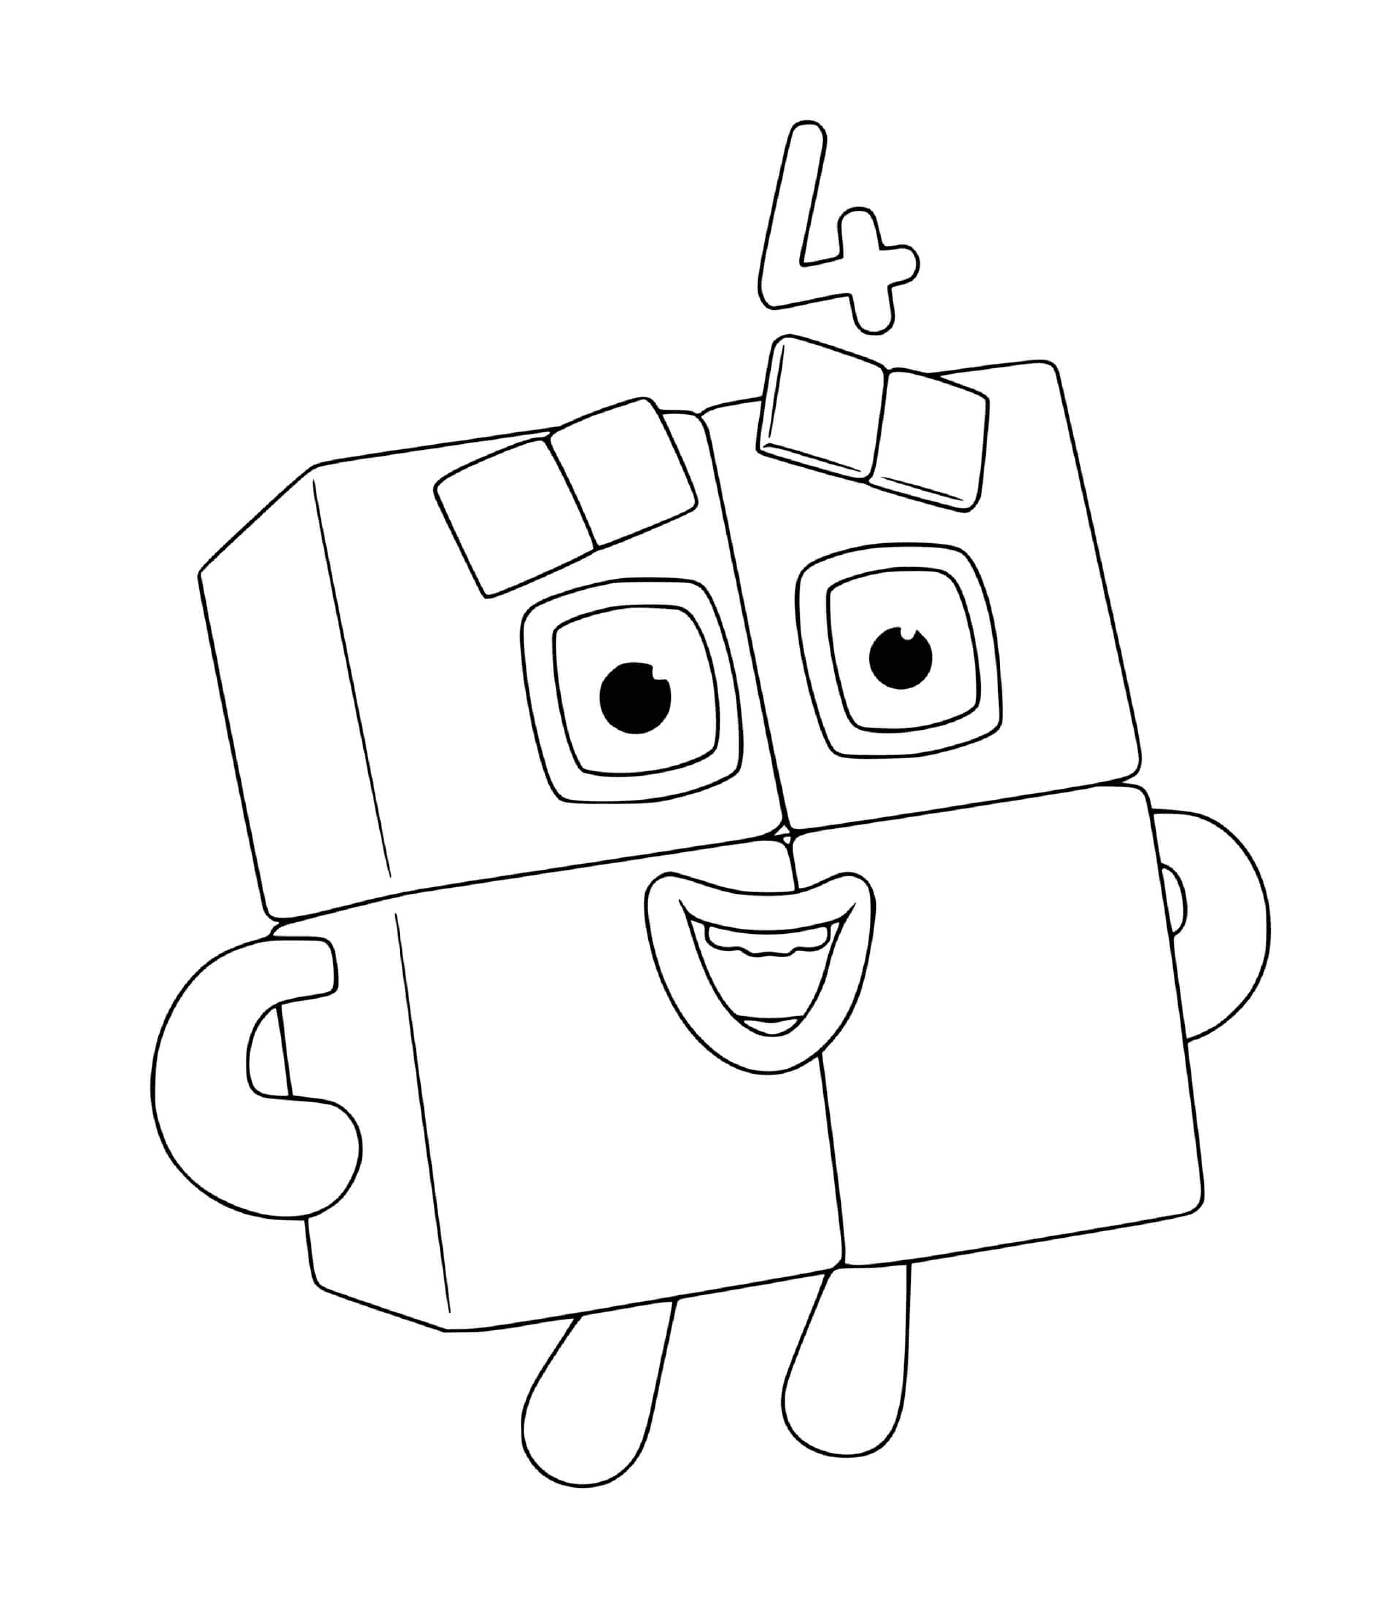  Numero di blocchi numero 4, un robot giocattolo 